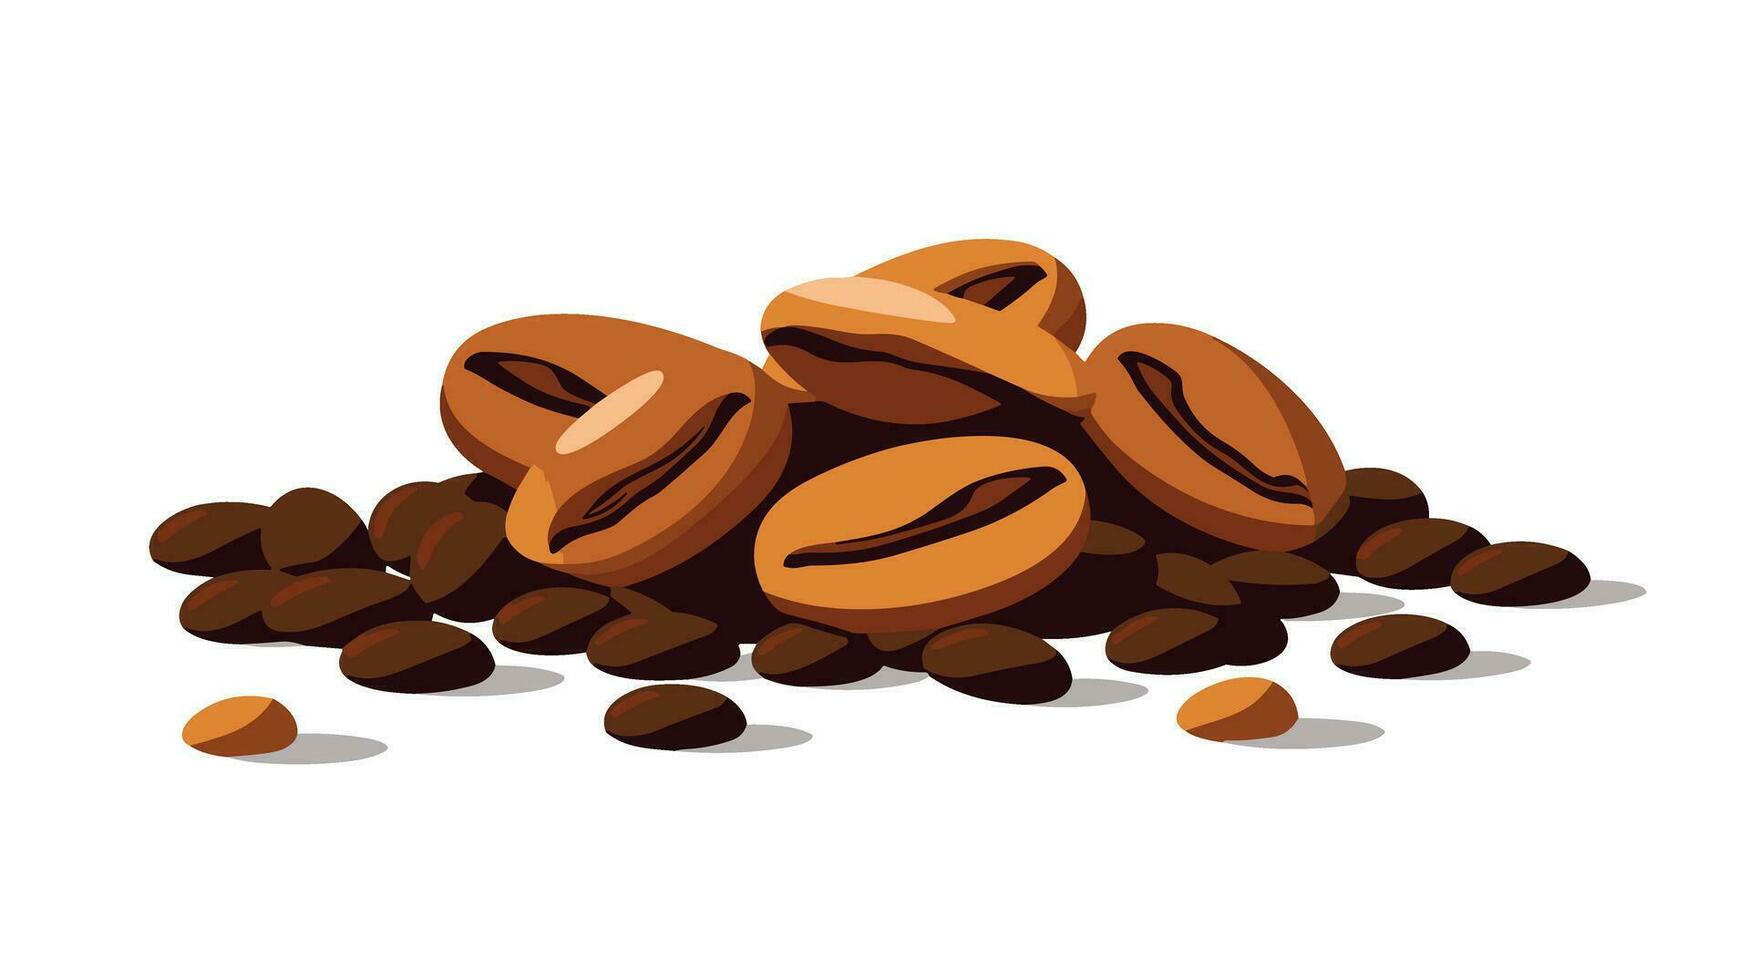 Kaffee Bohne Freuden Betanken Ihre Sinne mit unser fesselnd Logo Designs vektor